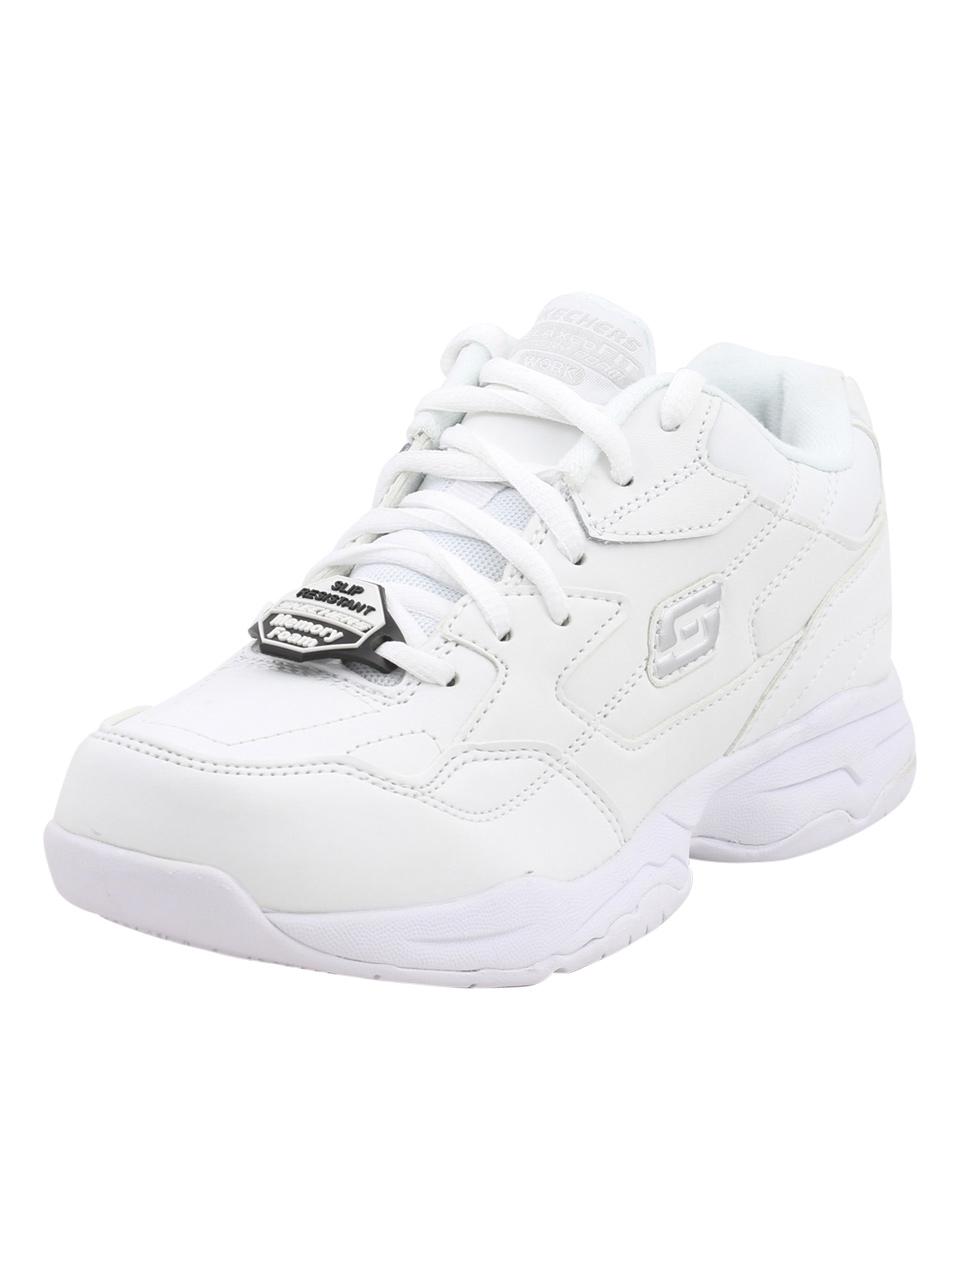 Skechers Work Women's Felton Albie Memory Foam Slip Resistant Sneakers Shoes - White - 10 B(M) US